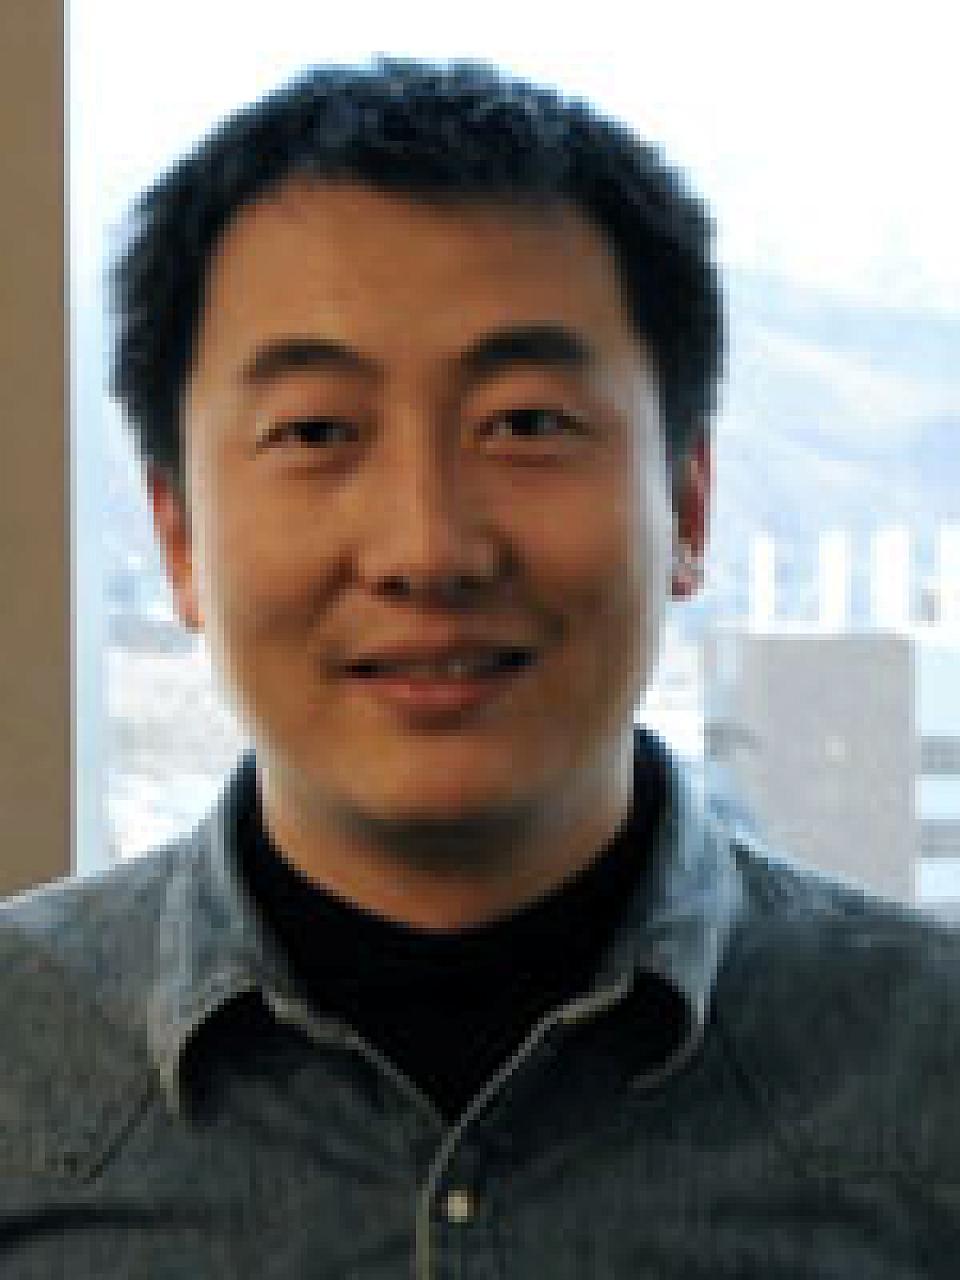 Yanliang Wang